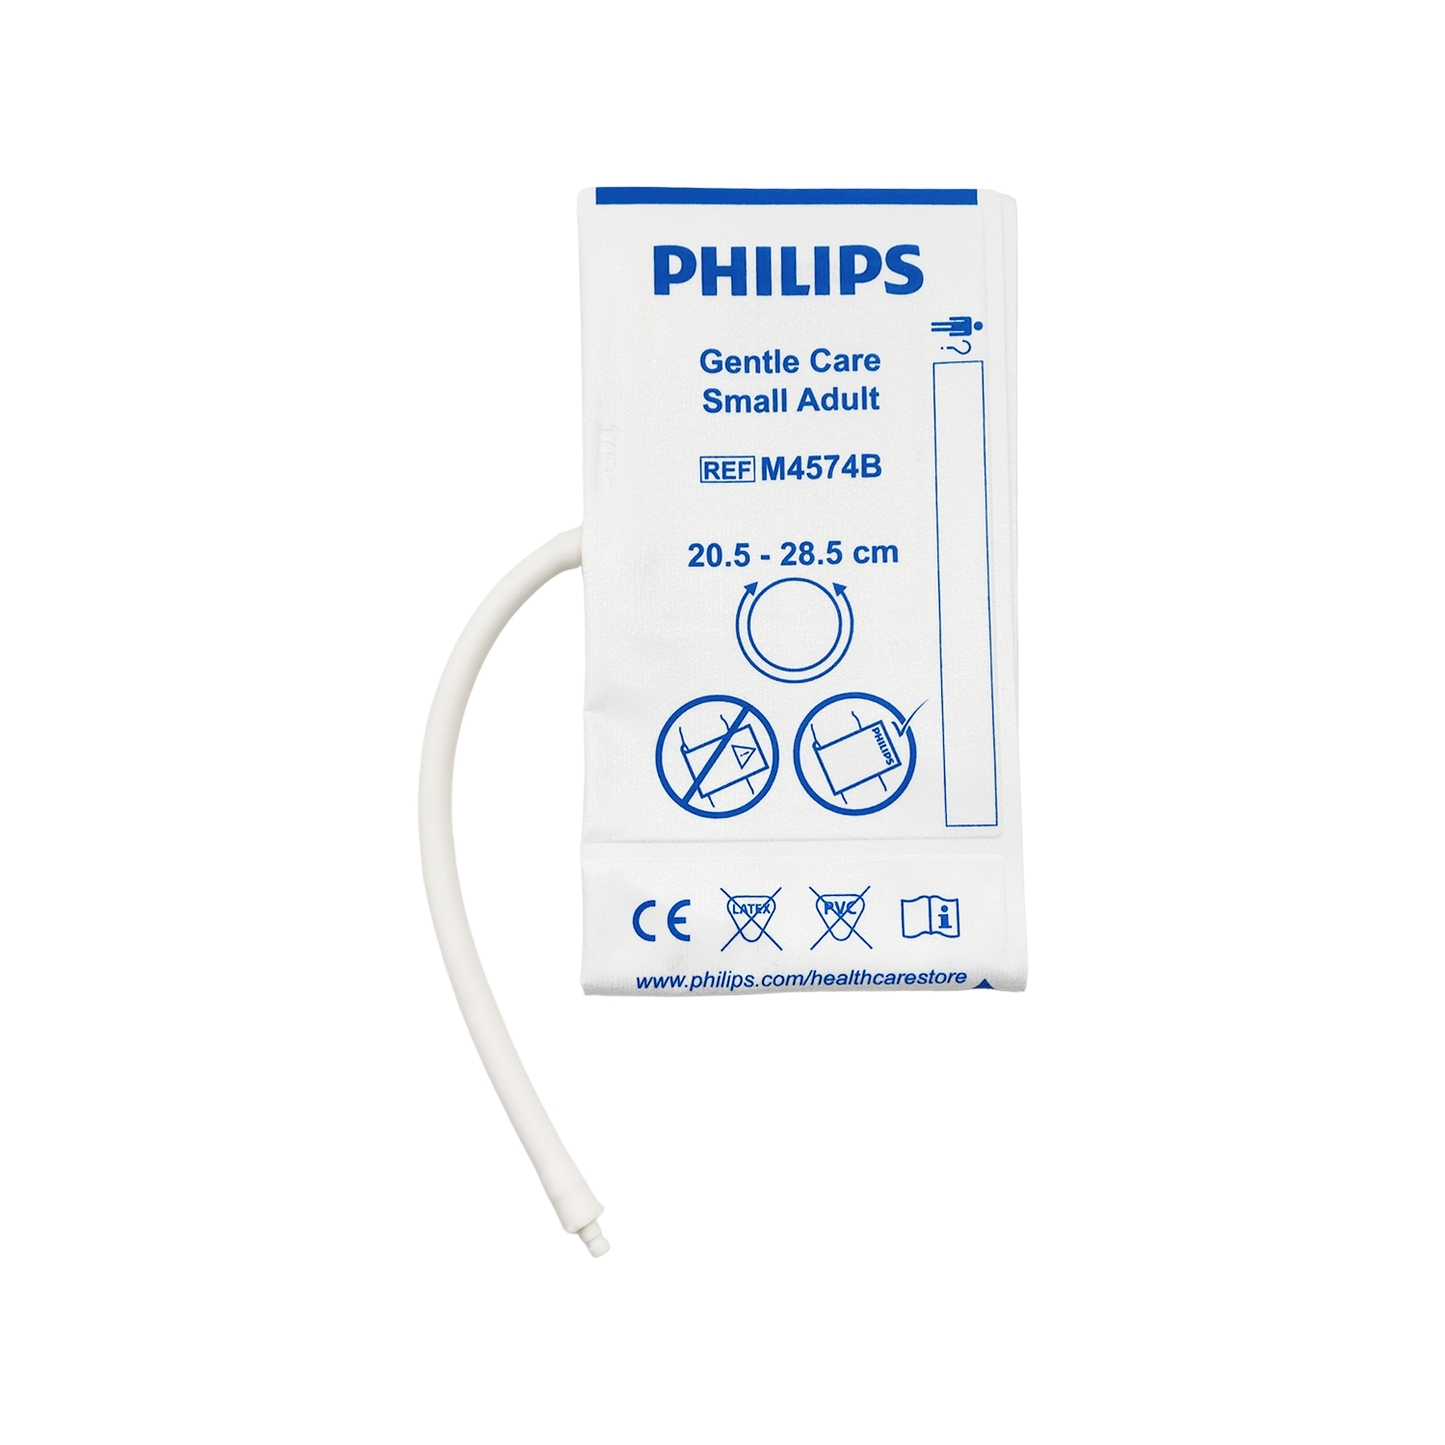 Philips NiBP Cuff Single Tube Non-Woven Fiber Adult Small (20.5-28.5cm) - M4574B / 989803148021